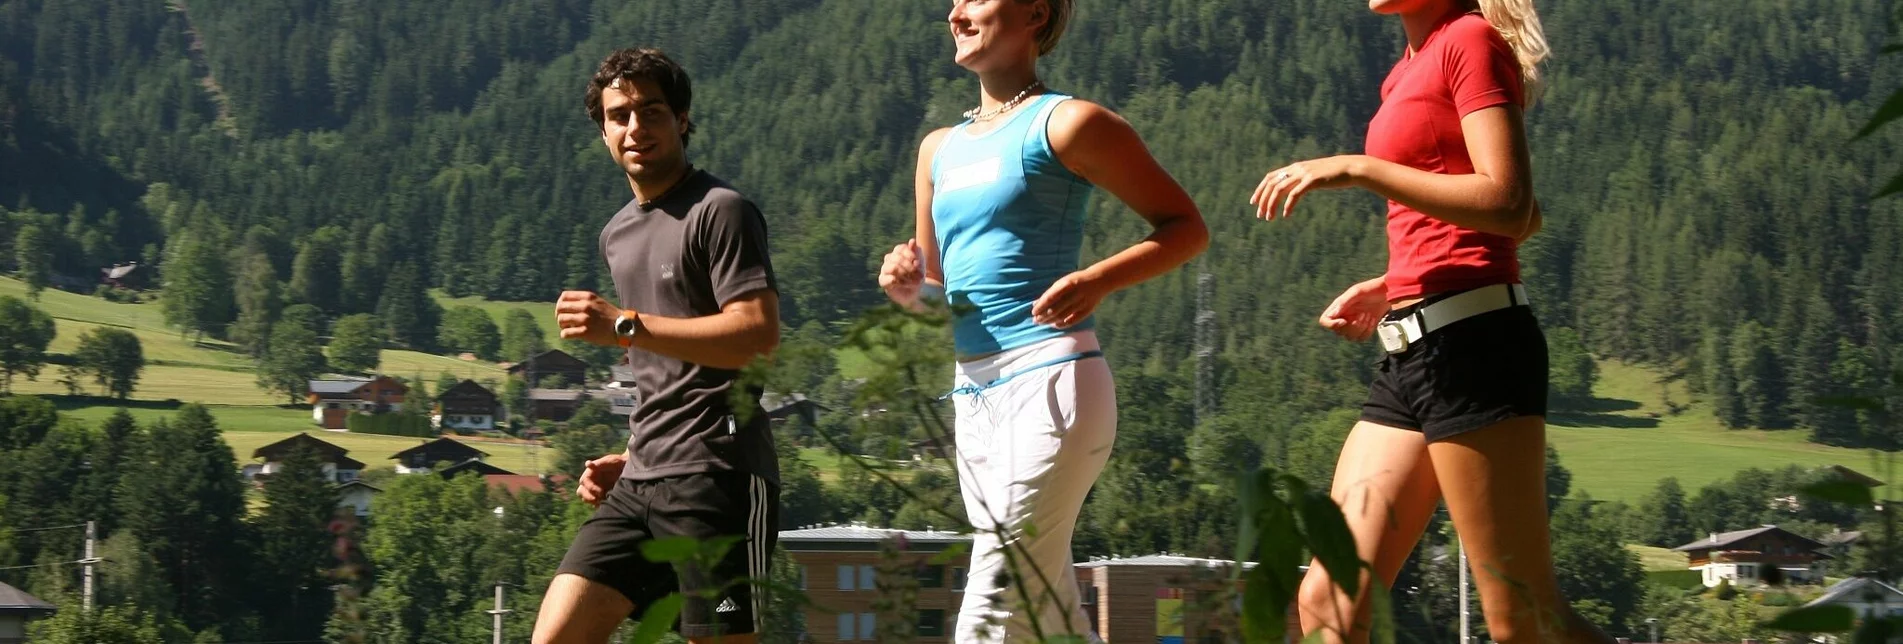 Jogging Die kleine klassische Laufrunde - Touren-Impression #1 | © Tourismusverband Schladming - Herbert Raffalt